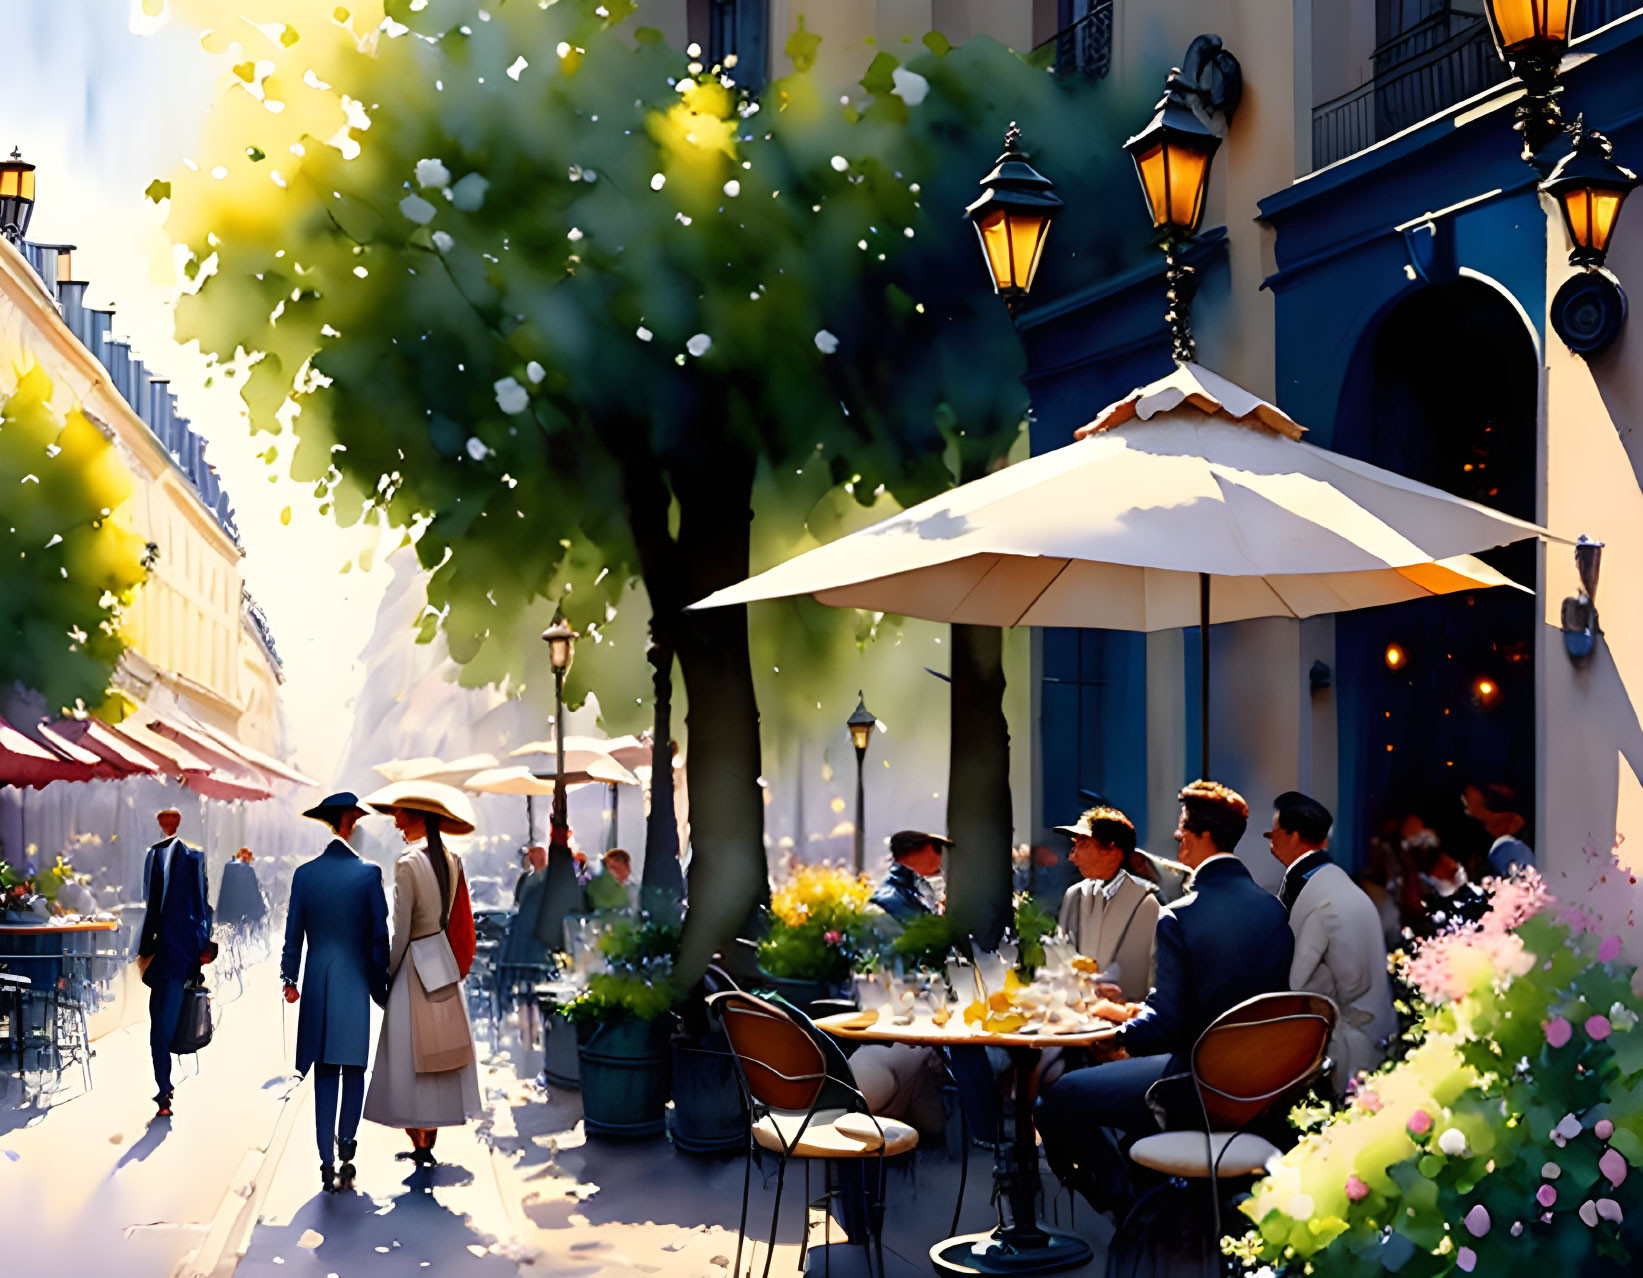 Sidewalk Cafes in Paris